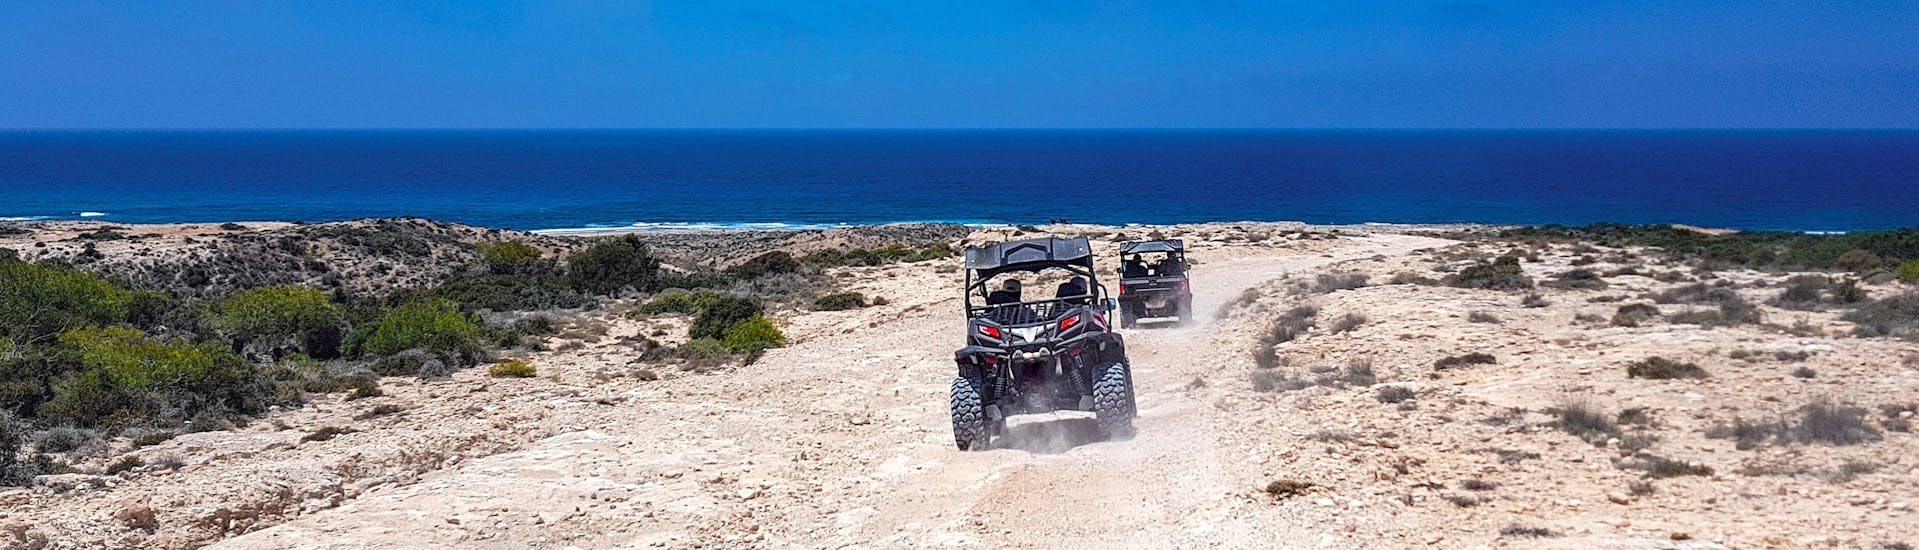 Twee buggy's op weg naar de kust tijdens een activiteit voor quad, ATV en buggy.